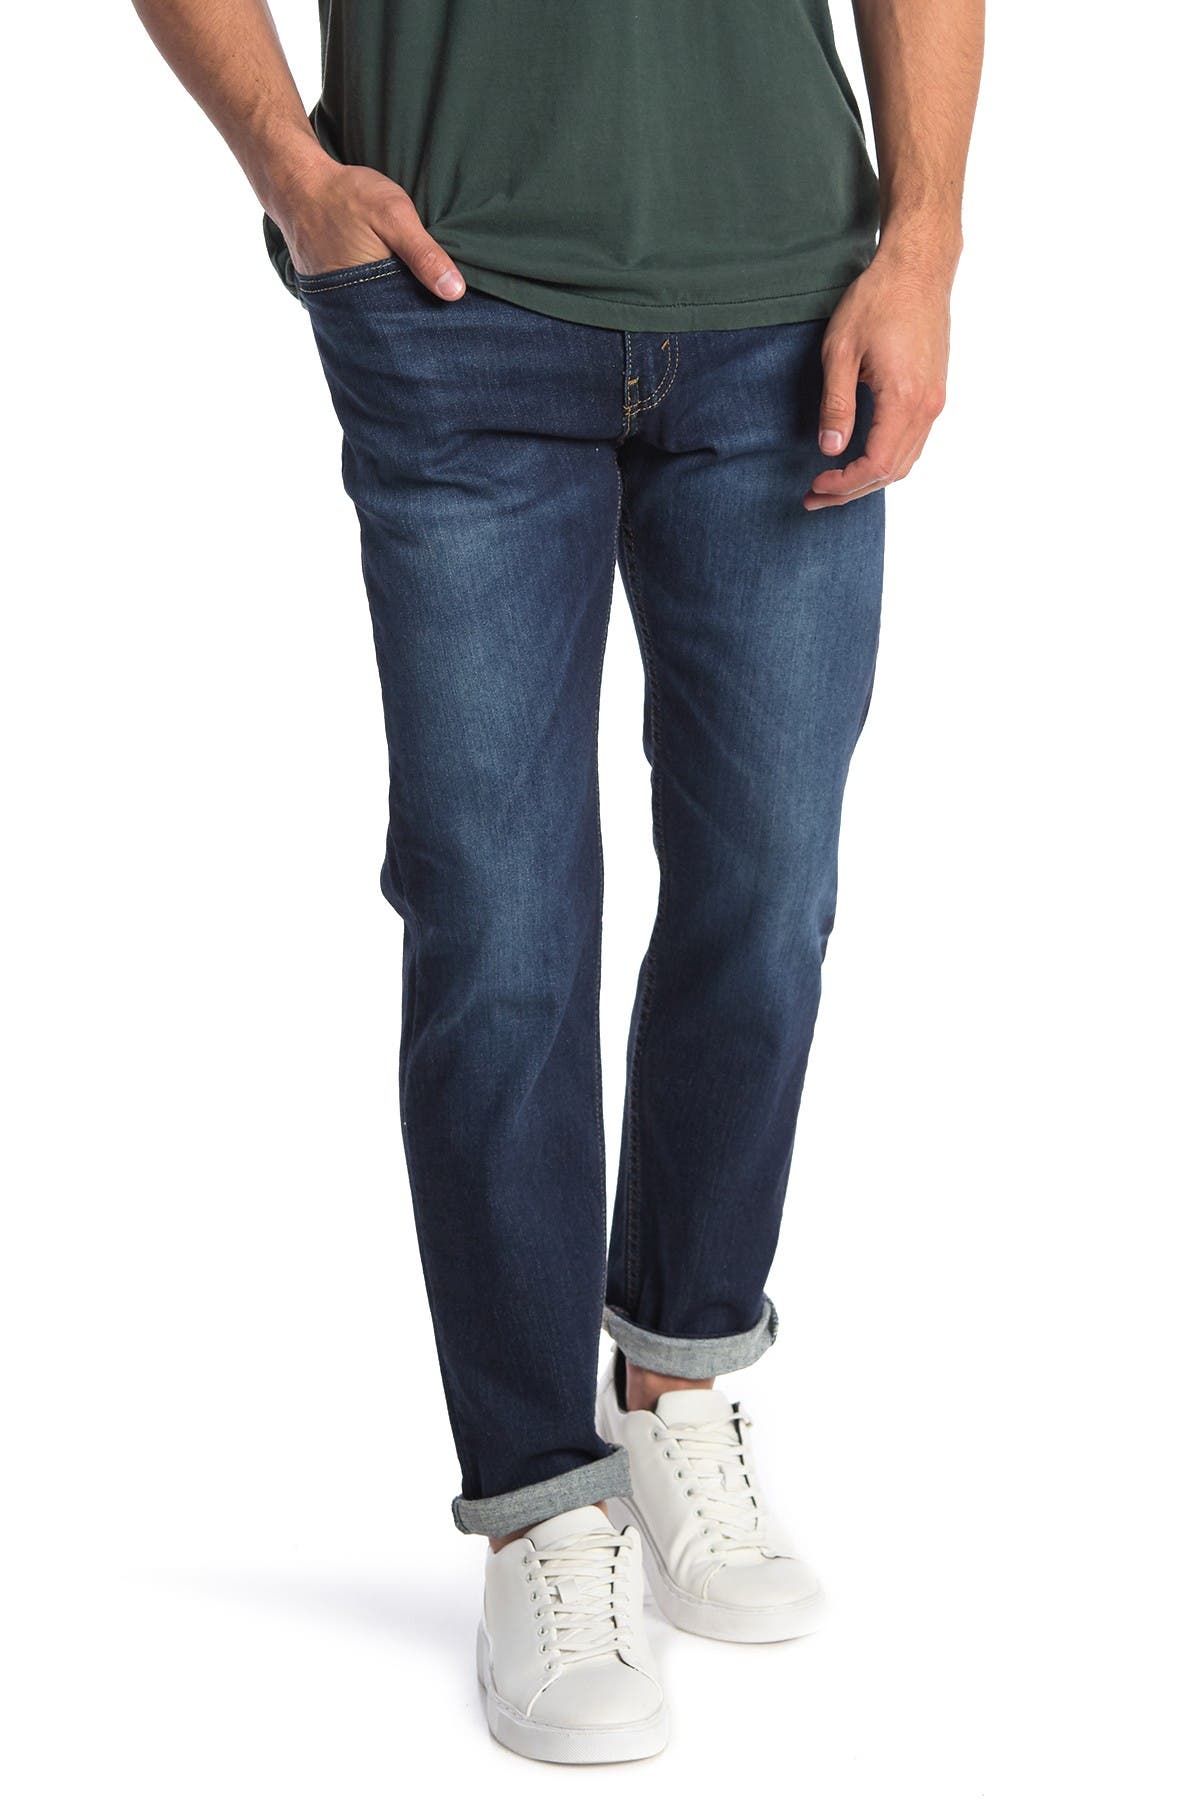 Levi's | 502 Athletic Fit Jeans - 30-32 